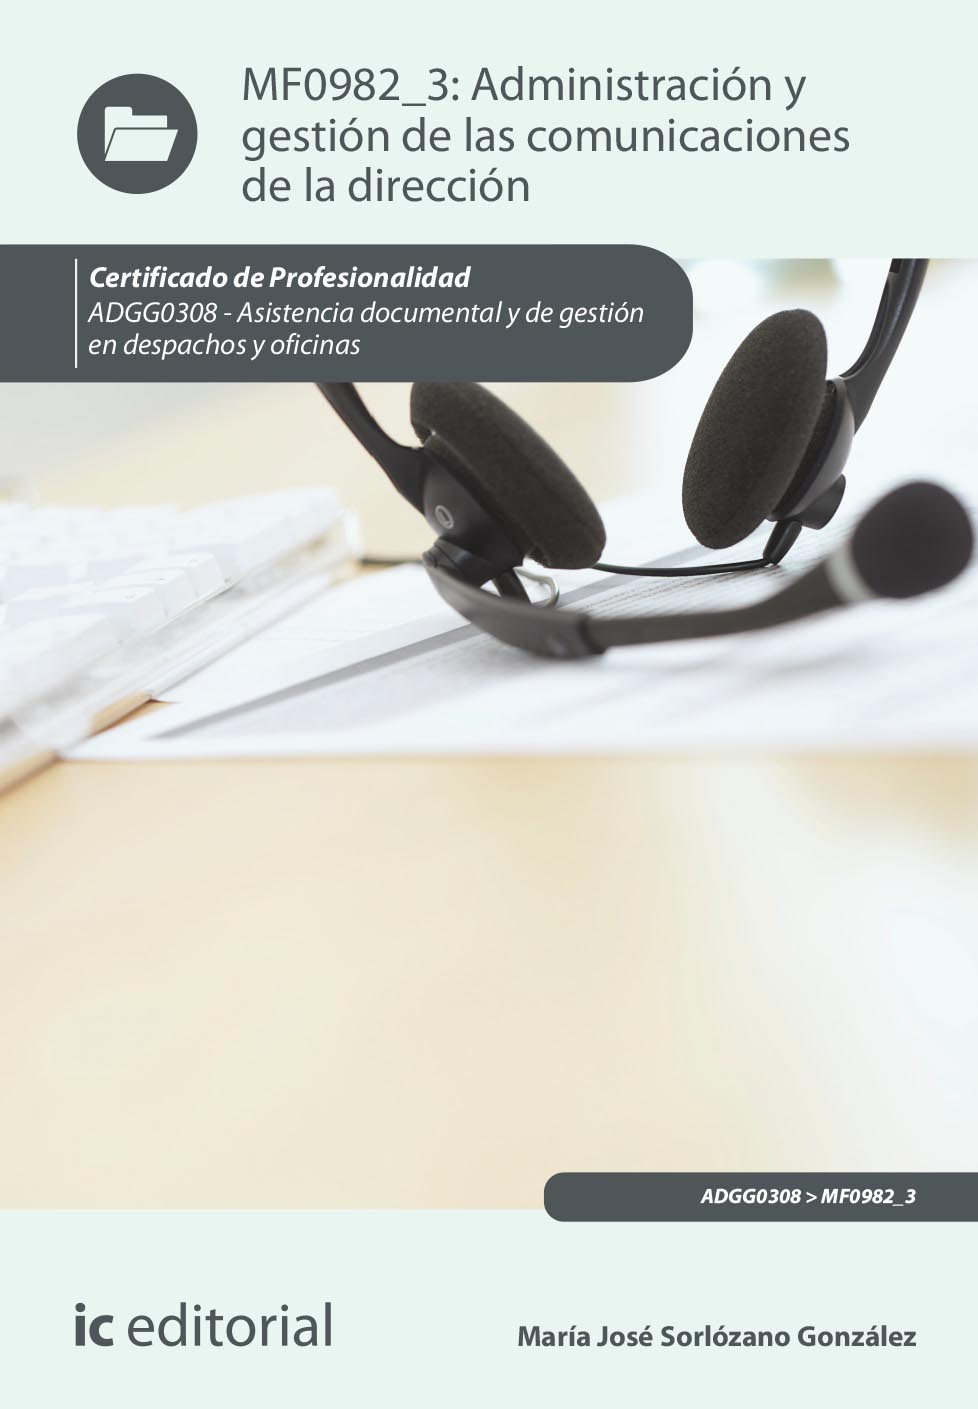 Administración y gestión de las comunicaciones de la dirección. ADGG0308 - Asistencia documental y de gestión de despachos y oficinas